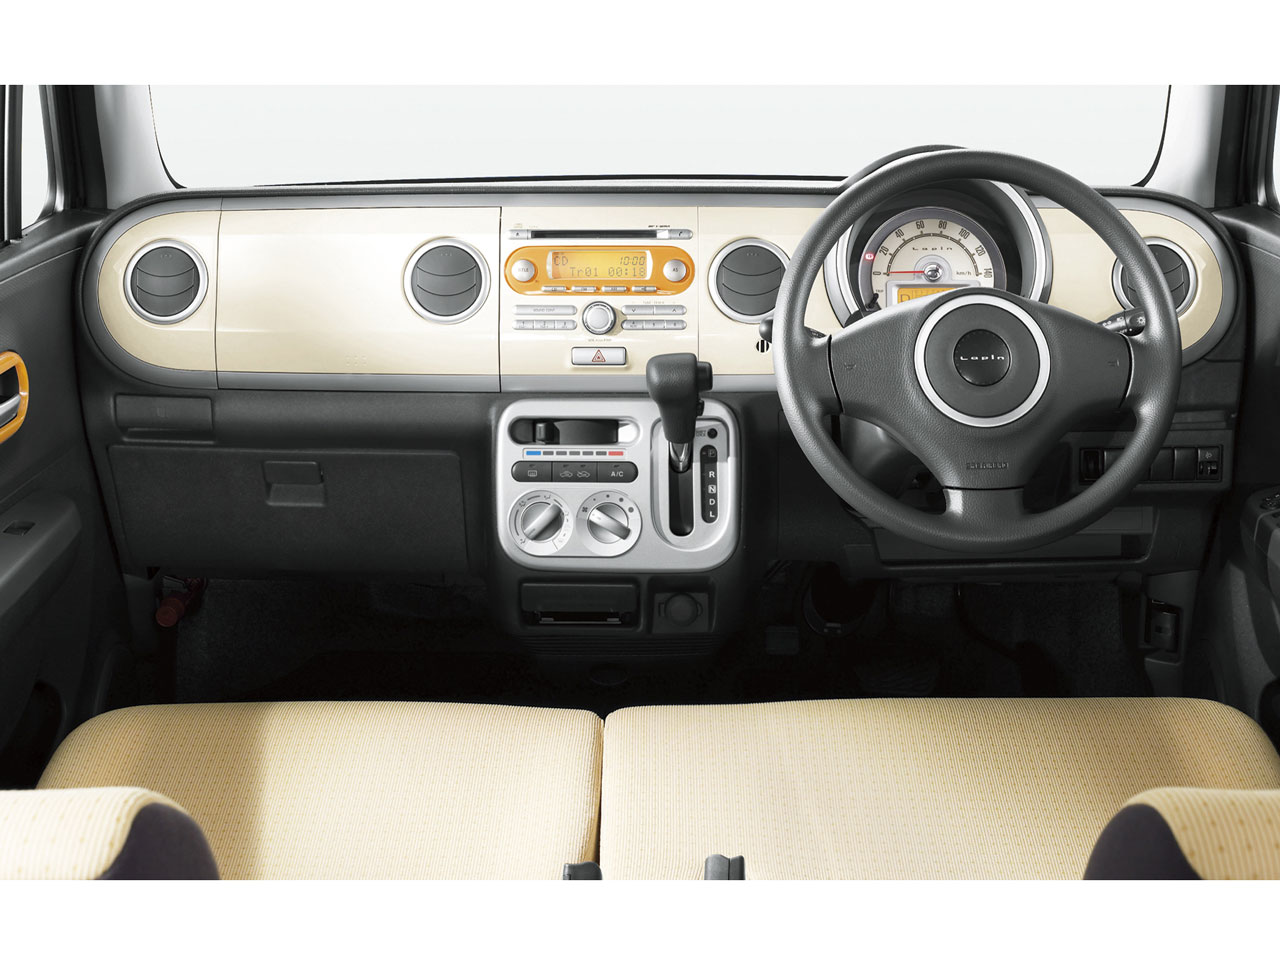 スズキ ラパン 08年モデル 10th アニバーサリー リミテッドの価格 性能 装備 オプション 11年11月21日発売 価格 Com